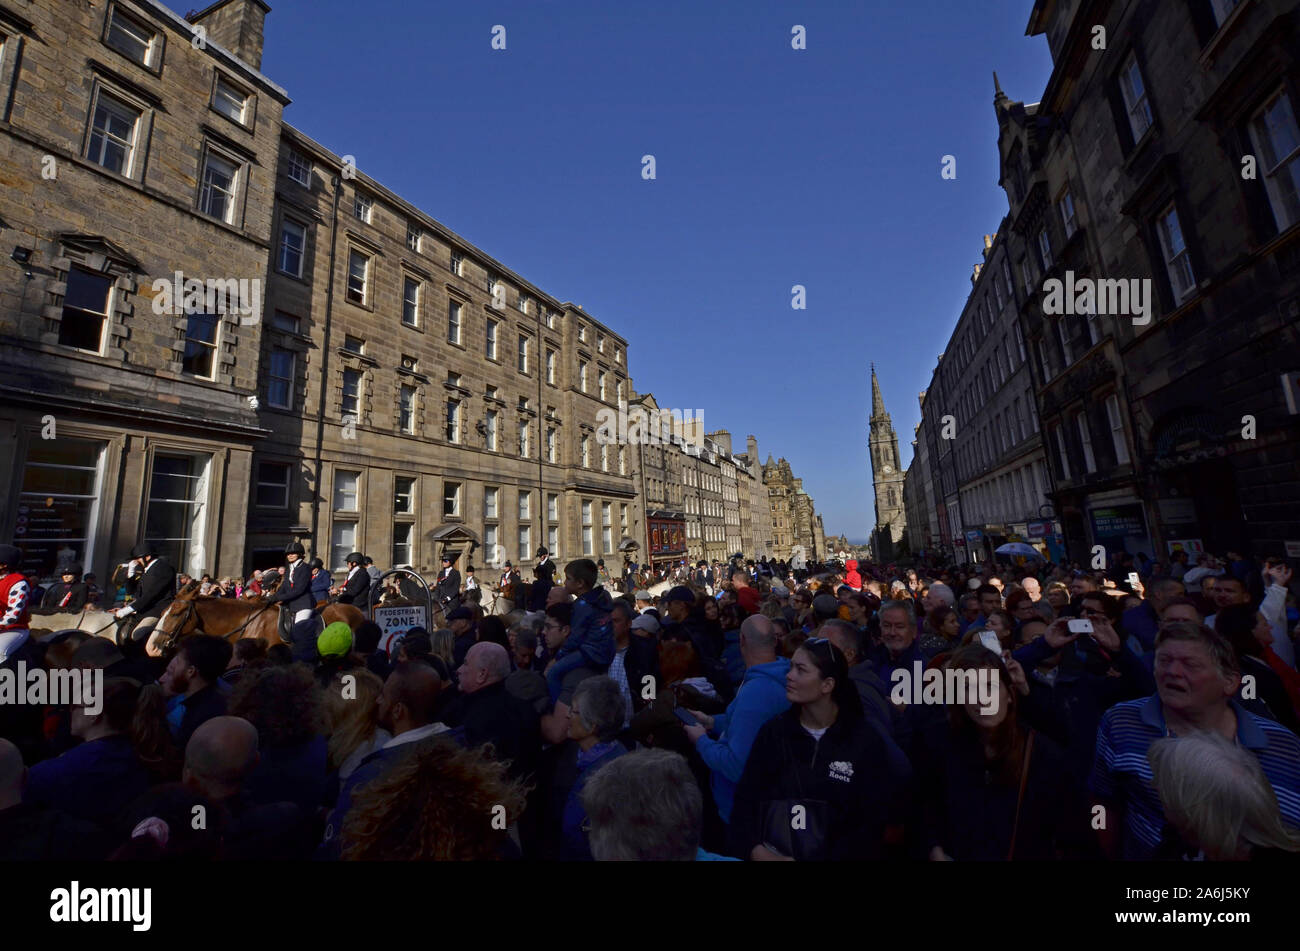 Reiter und civic Zahlen im Jahr 2019, der Märsche in Edinburgh, Schottland, Großbritannien. Über 250 Pferde und Reiter nahmen an der Veranstaltung teil. Stockfoto